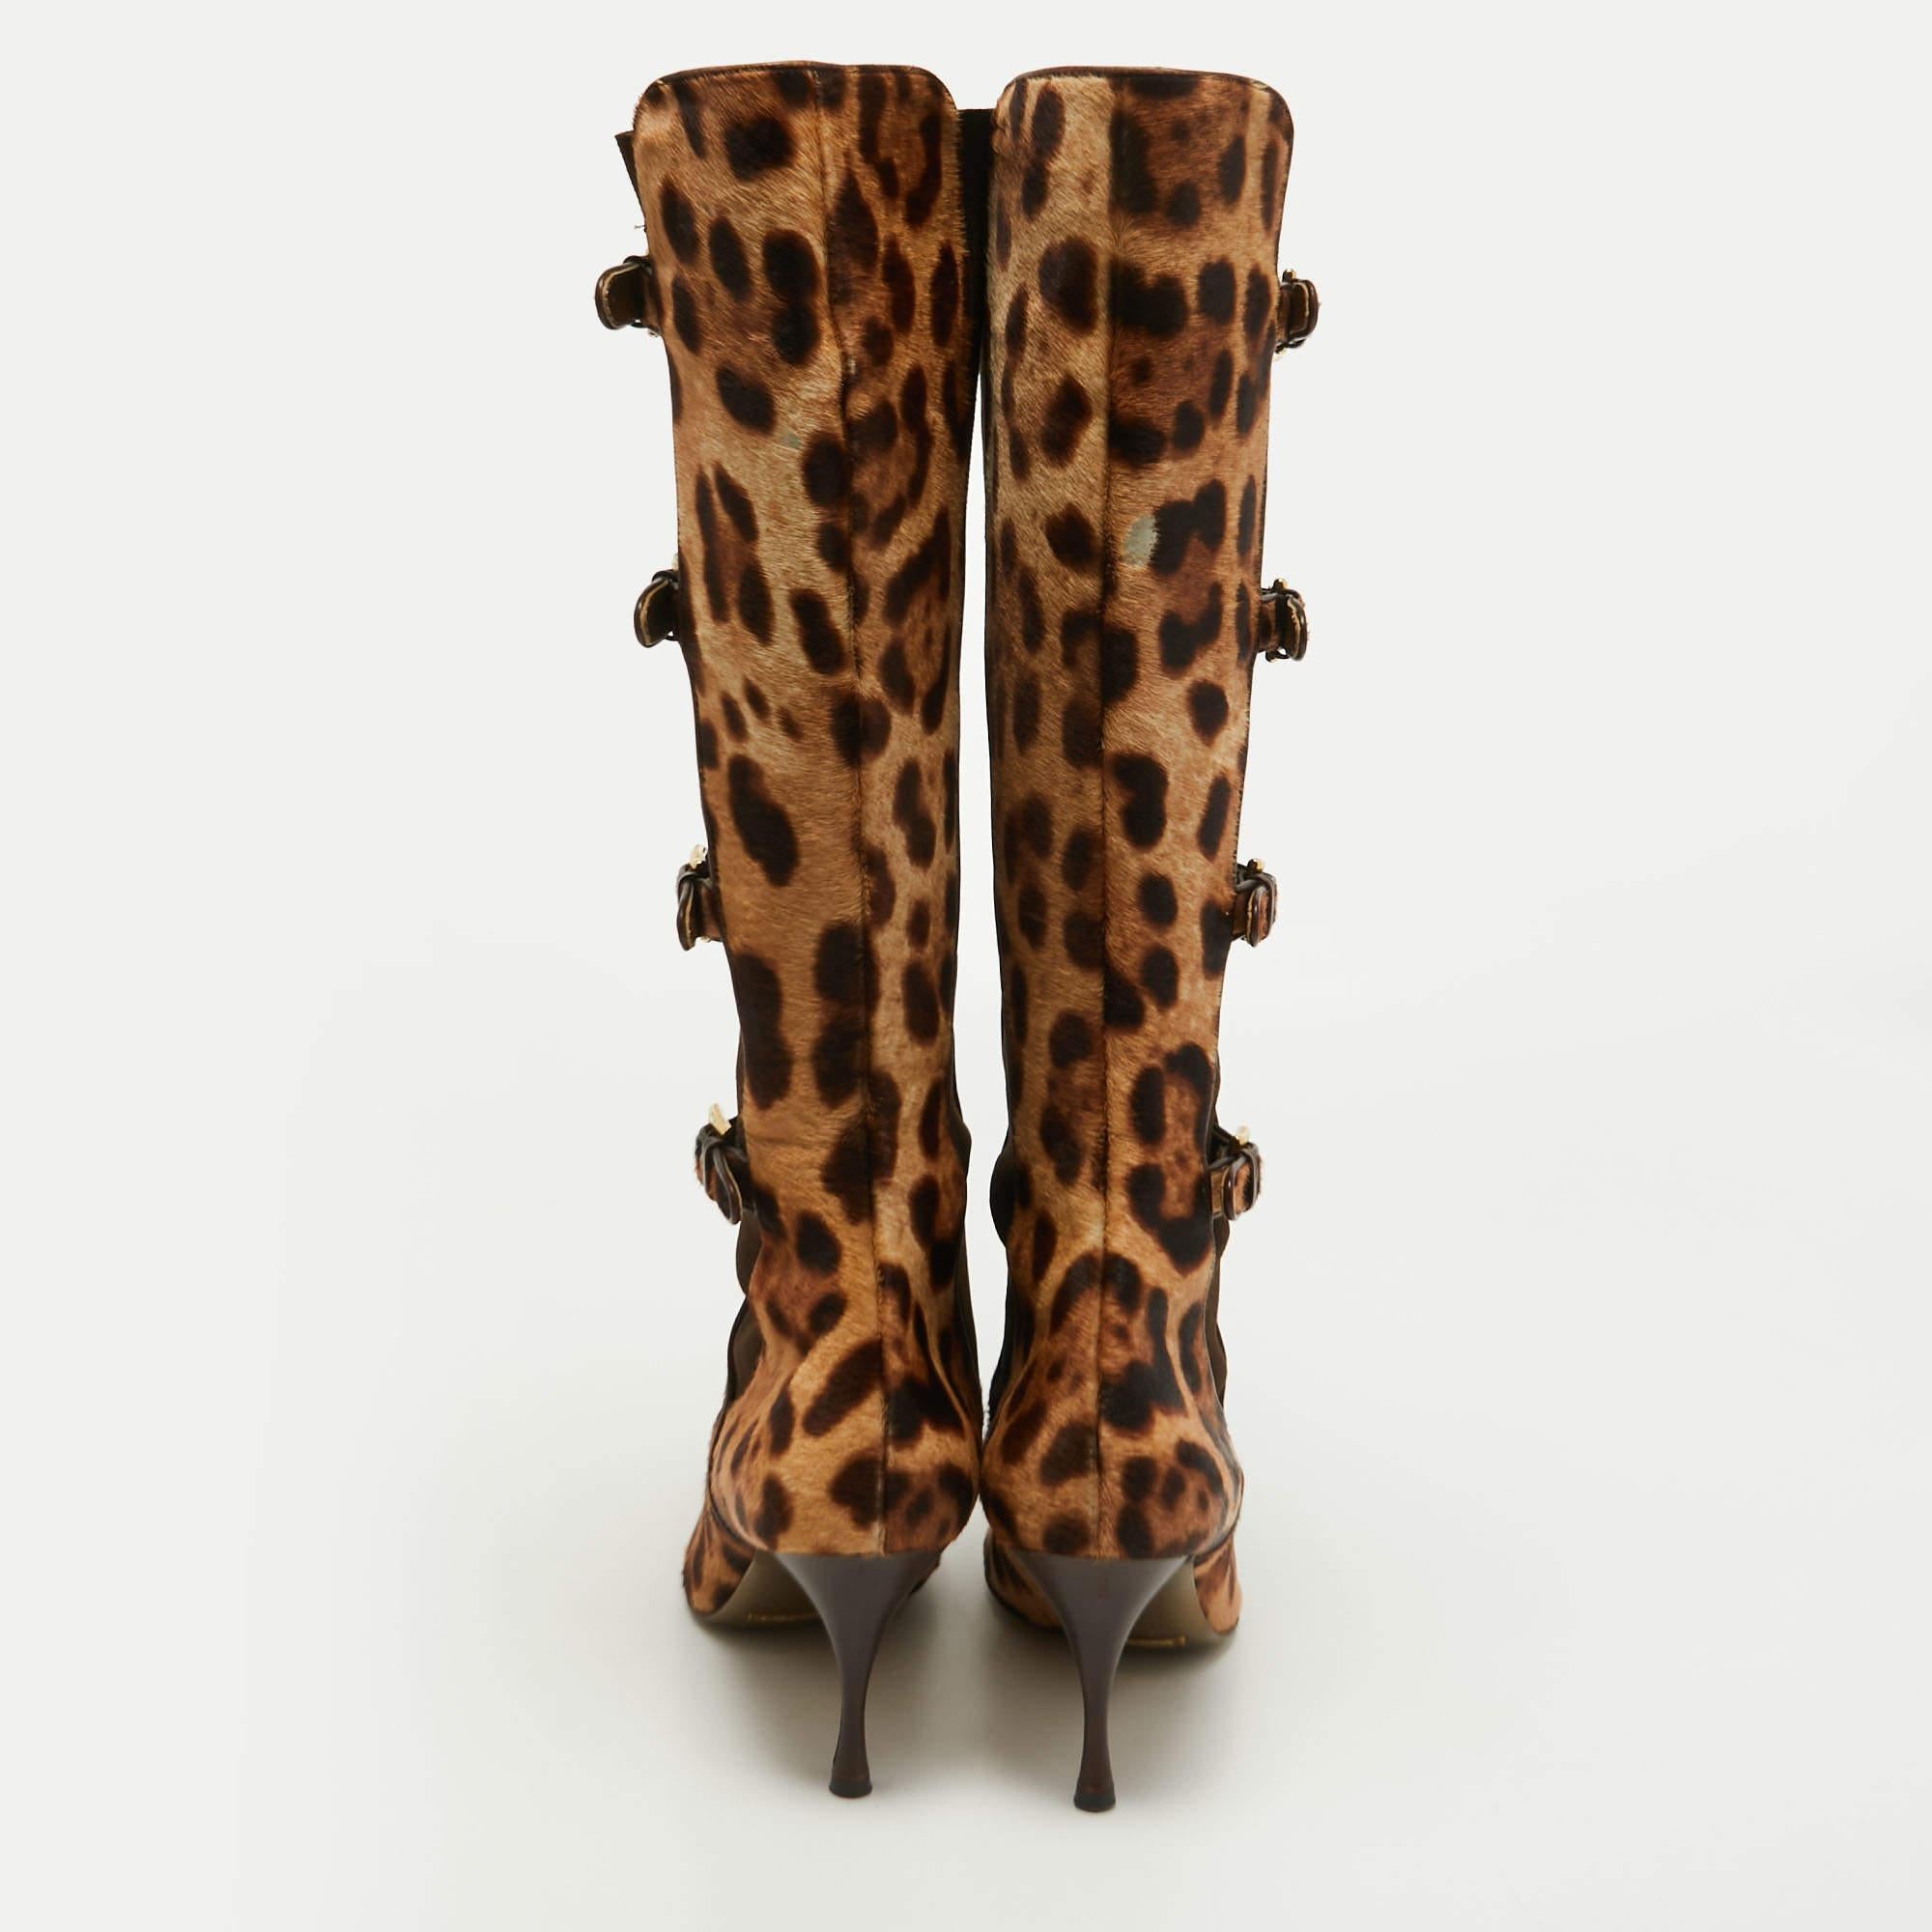 Verleihen Sie Ihrem Outfit ein schickes Update mit diesem Paar knielanger Stiefel von Dolce & Gabbana. Die Stiefel aus Kalbshaar mit Leopardenmuster haben überzogene Zehen, Schnallendetails und 9 cm hohe Absätze. Setzen Sie damit ein Zeichen!

